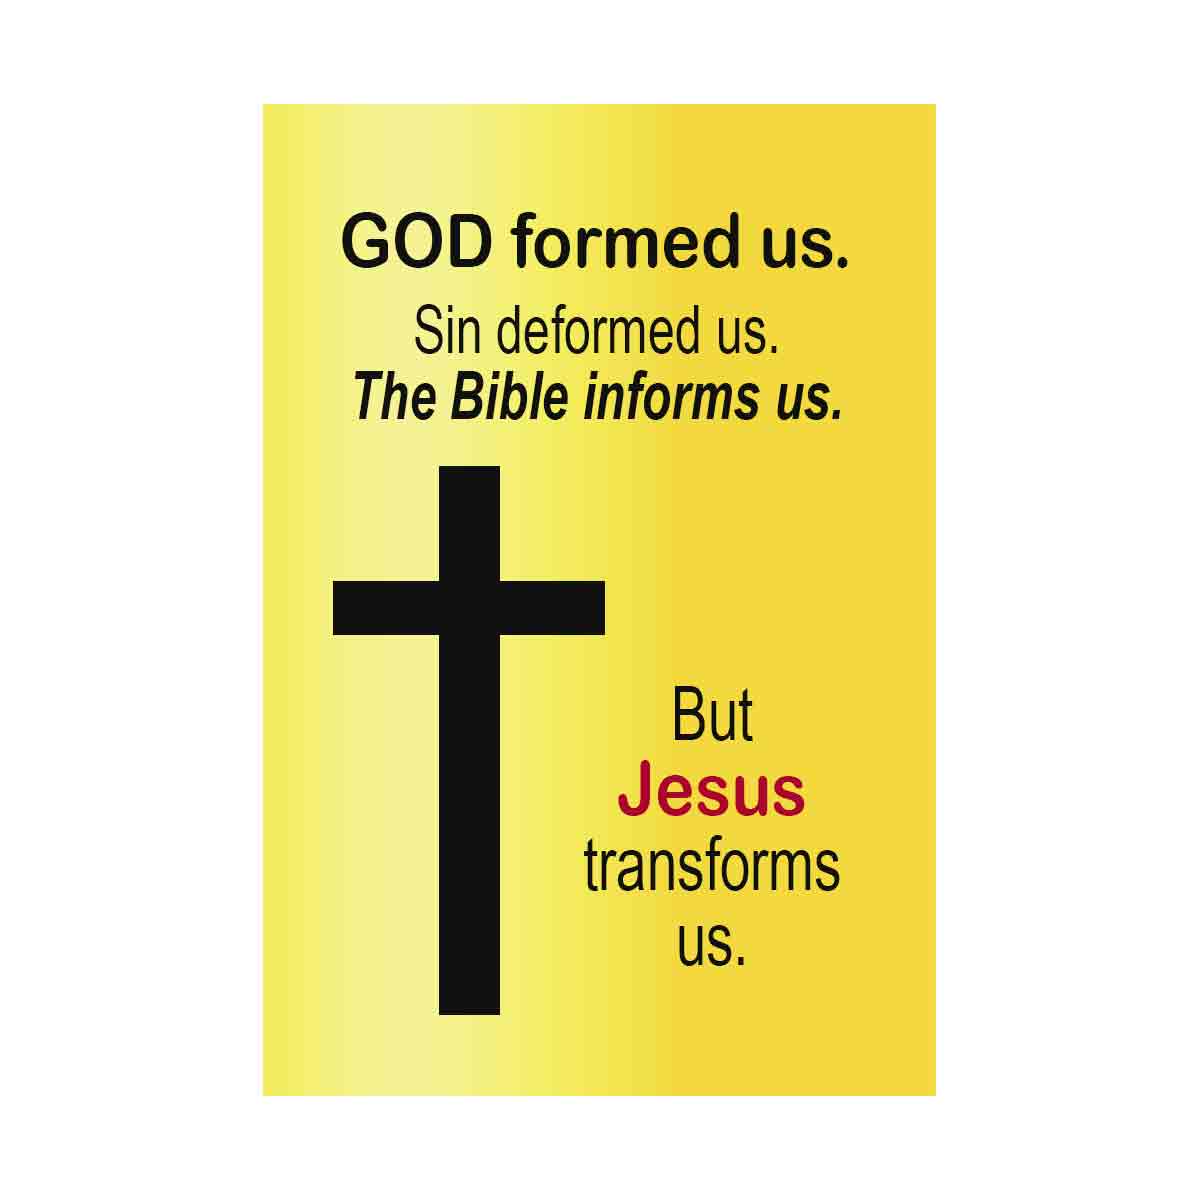 God formed us